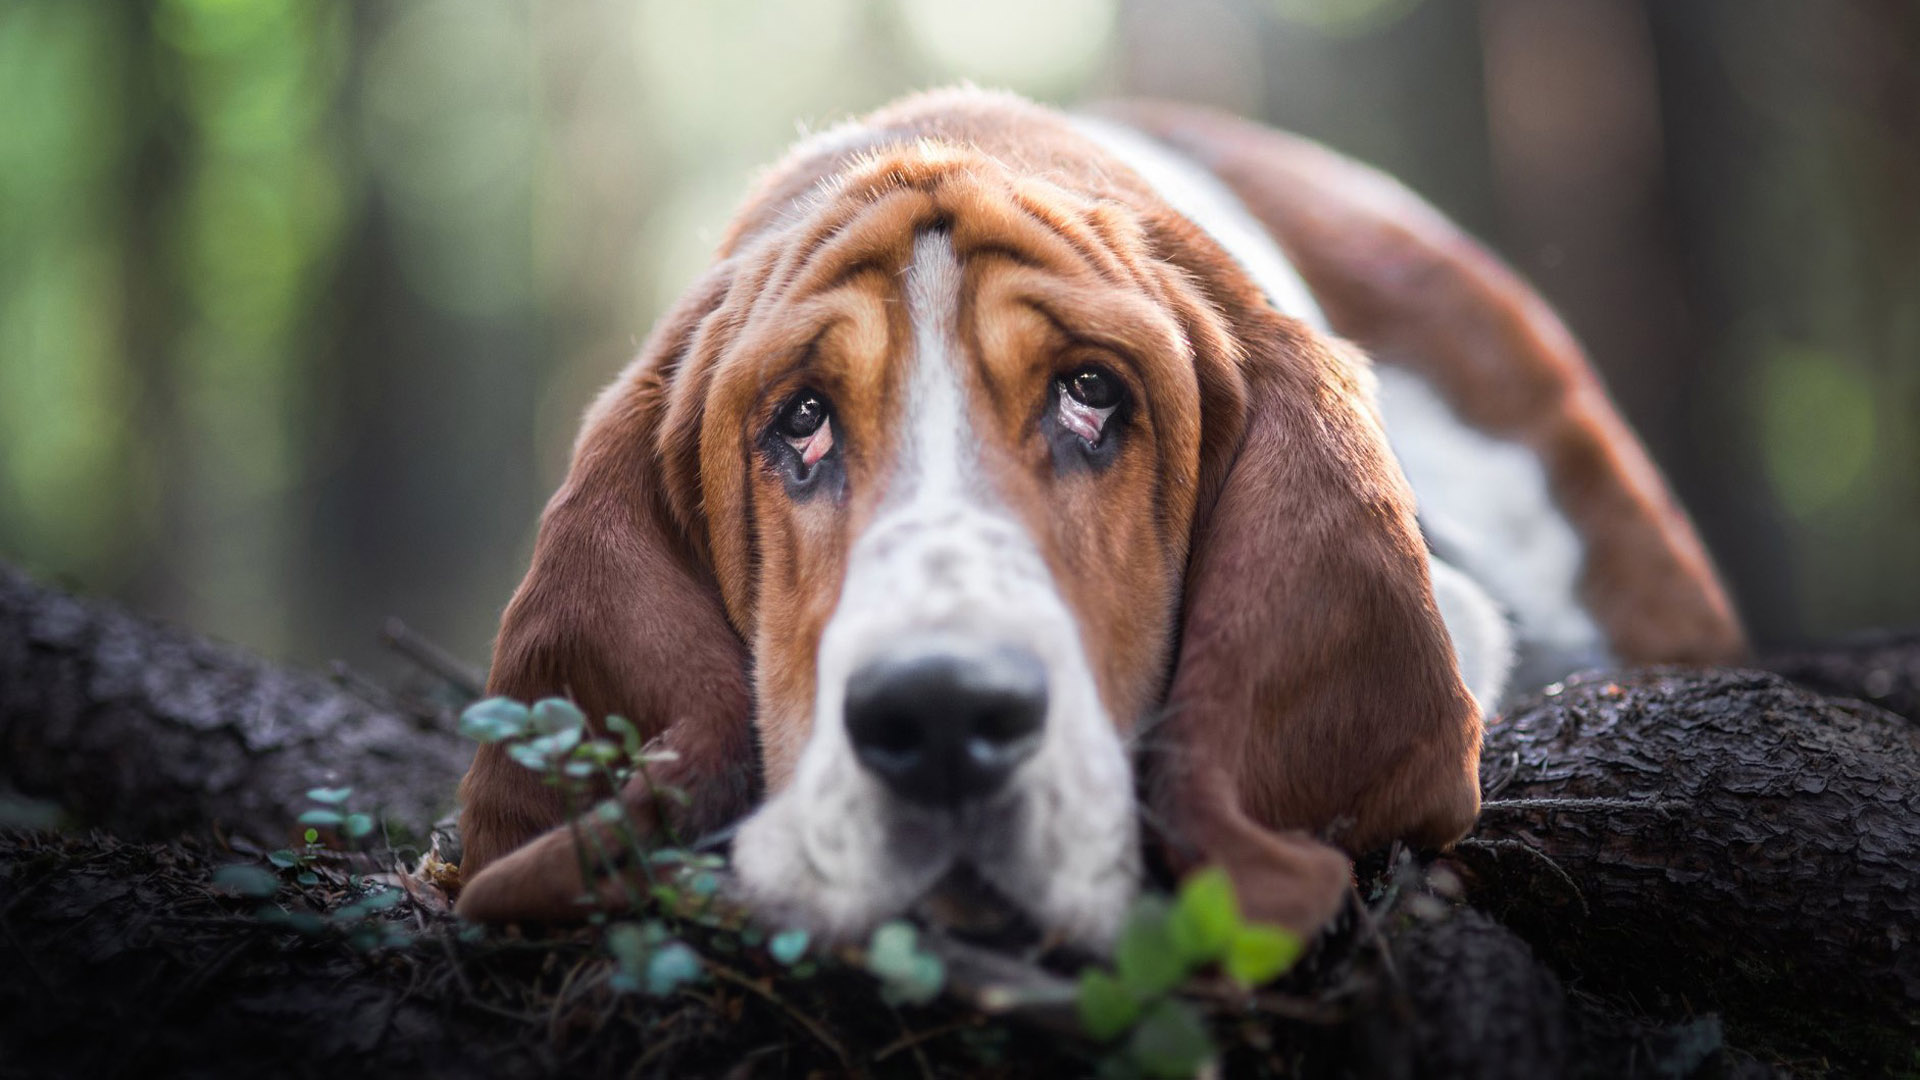 Basset Hound Dog With Sad Face On Wood 2K Dog